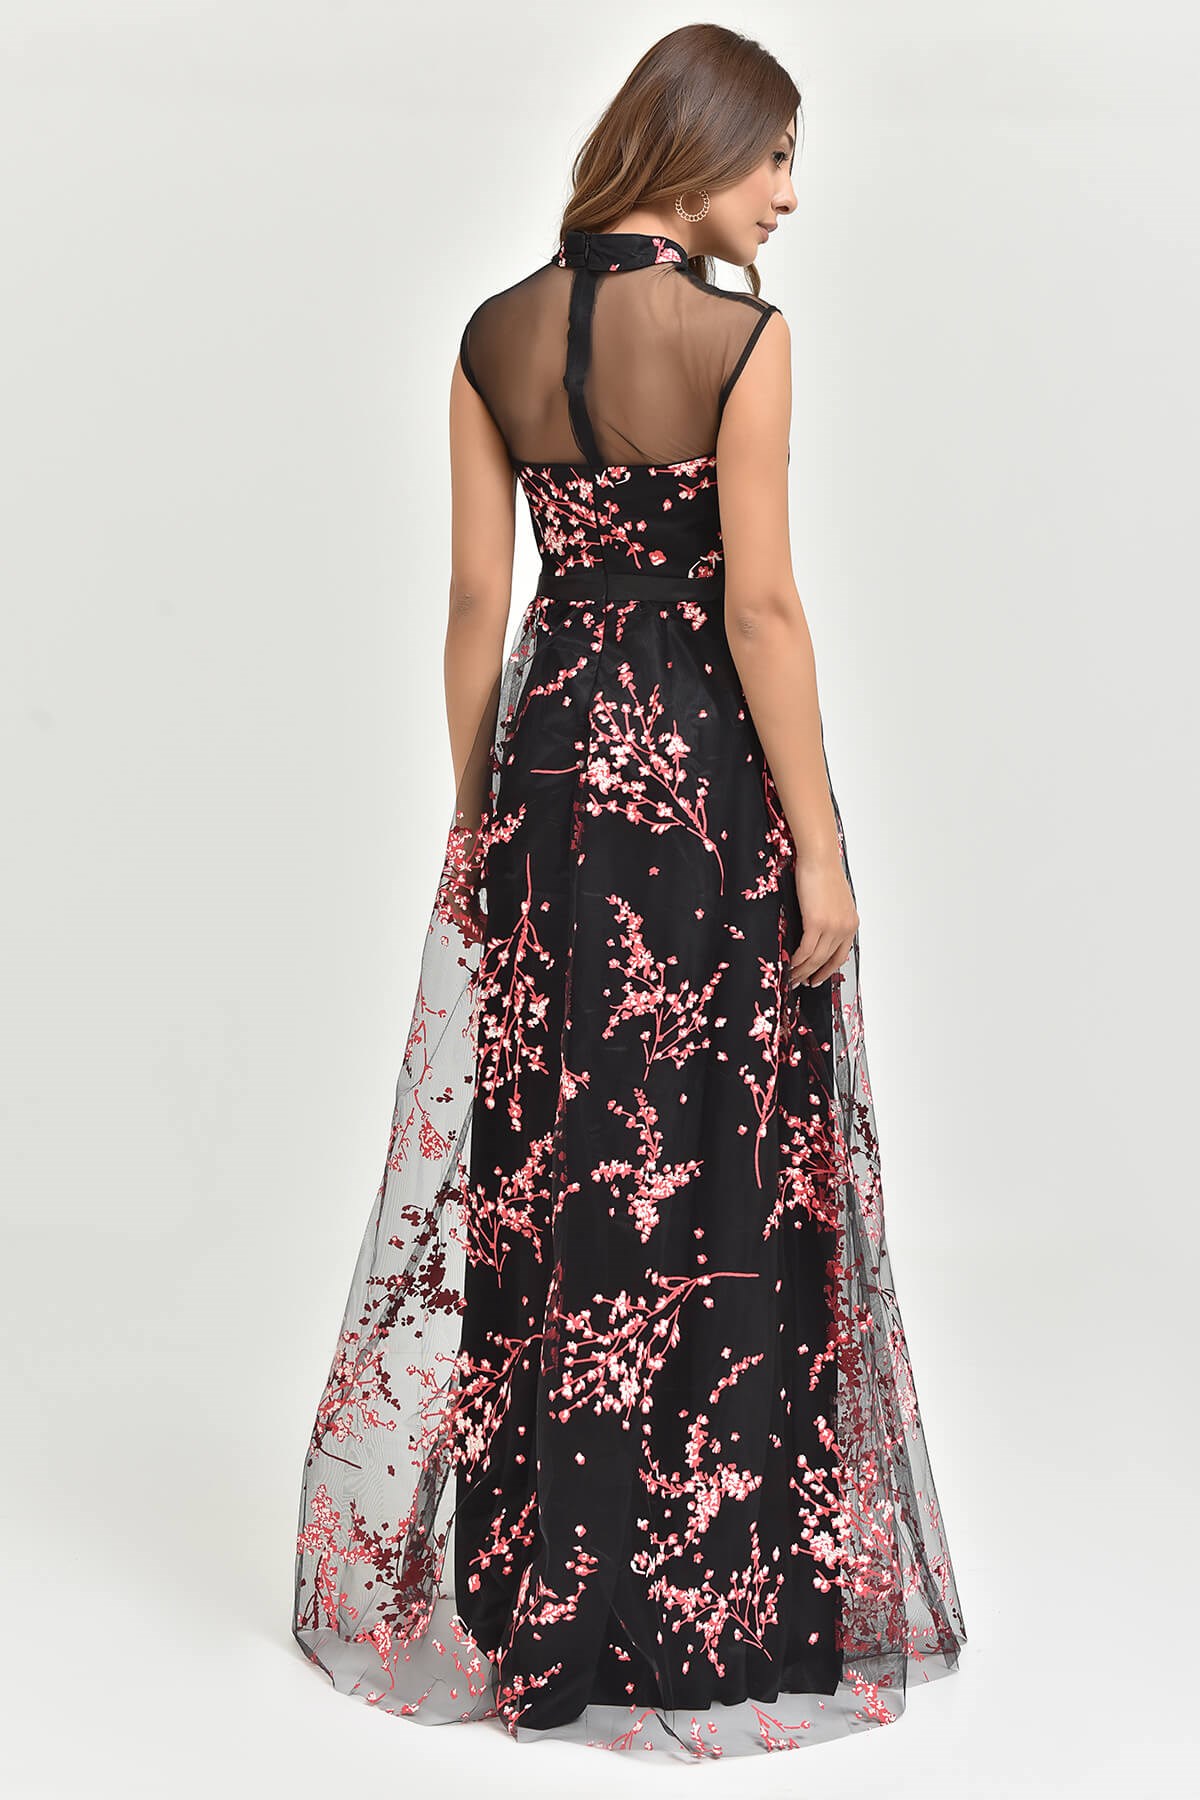 FM Siyah Çiçekli Tül Abiye Elbise - Moda Kapımda İle Kapınızda!